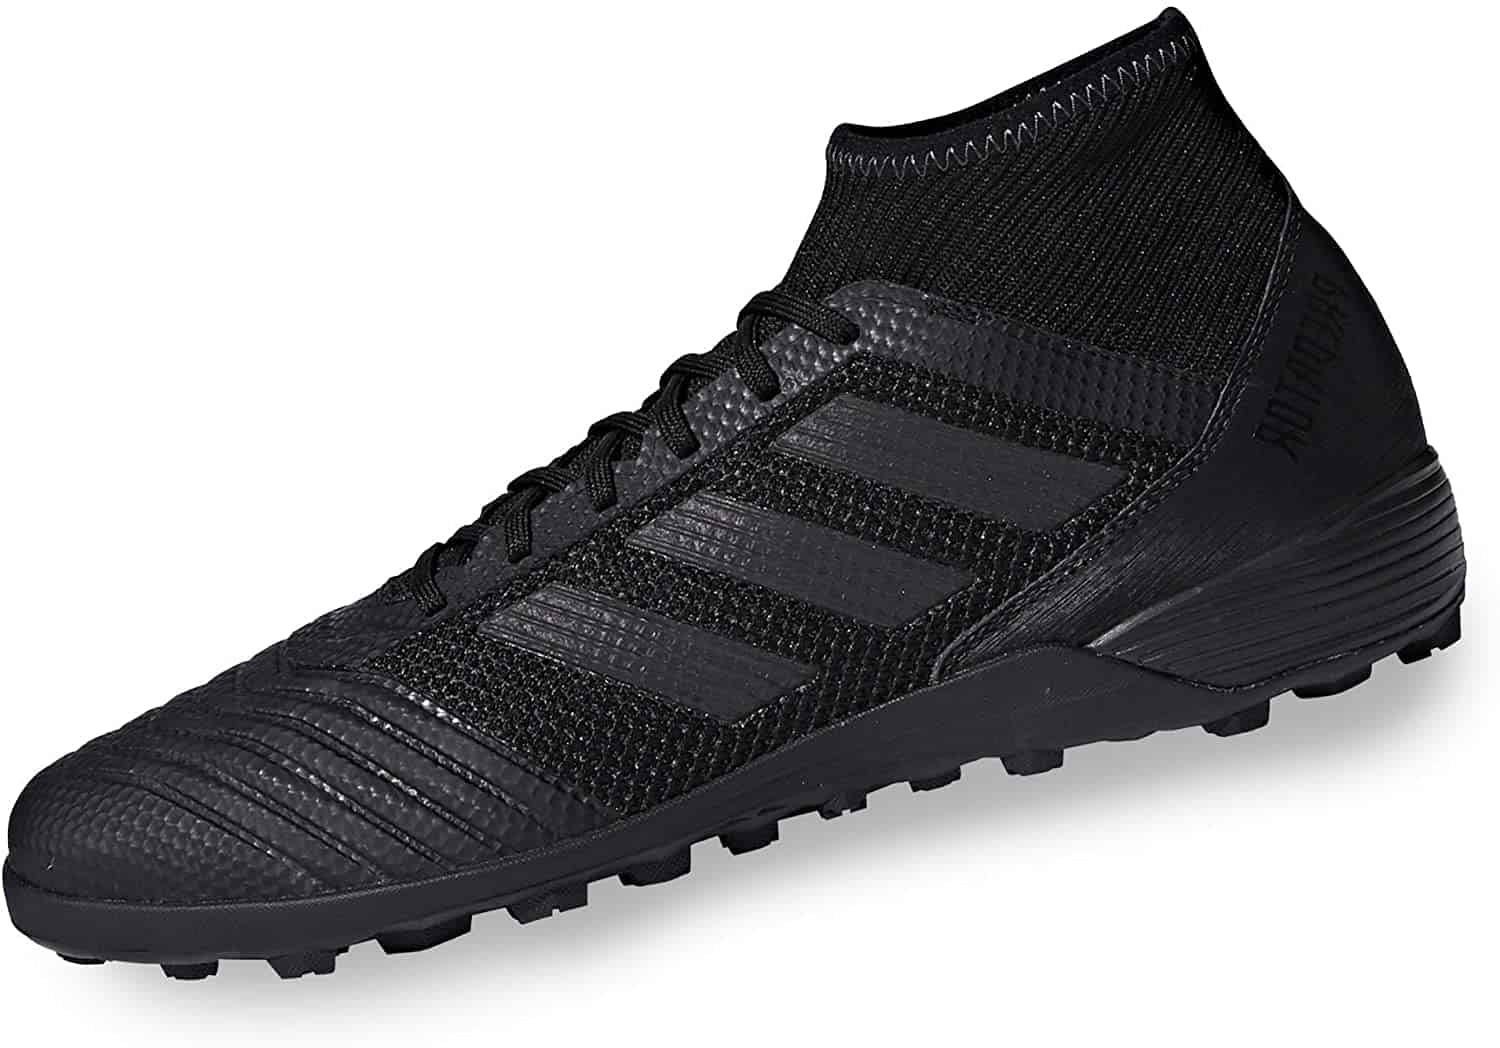 ดีที่สุดสำหรับฟุตบอลในร่ม: Adidas Predator Tango 18.3